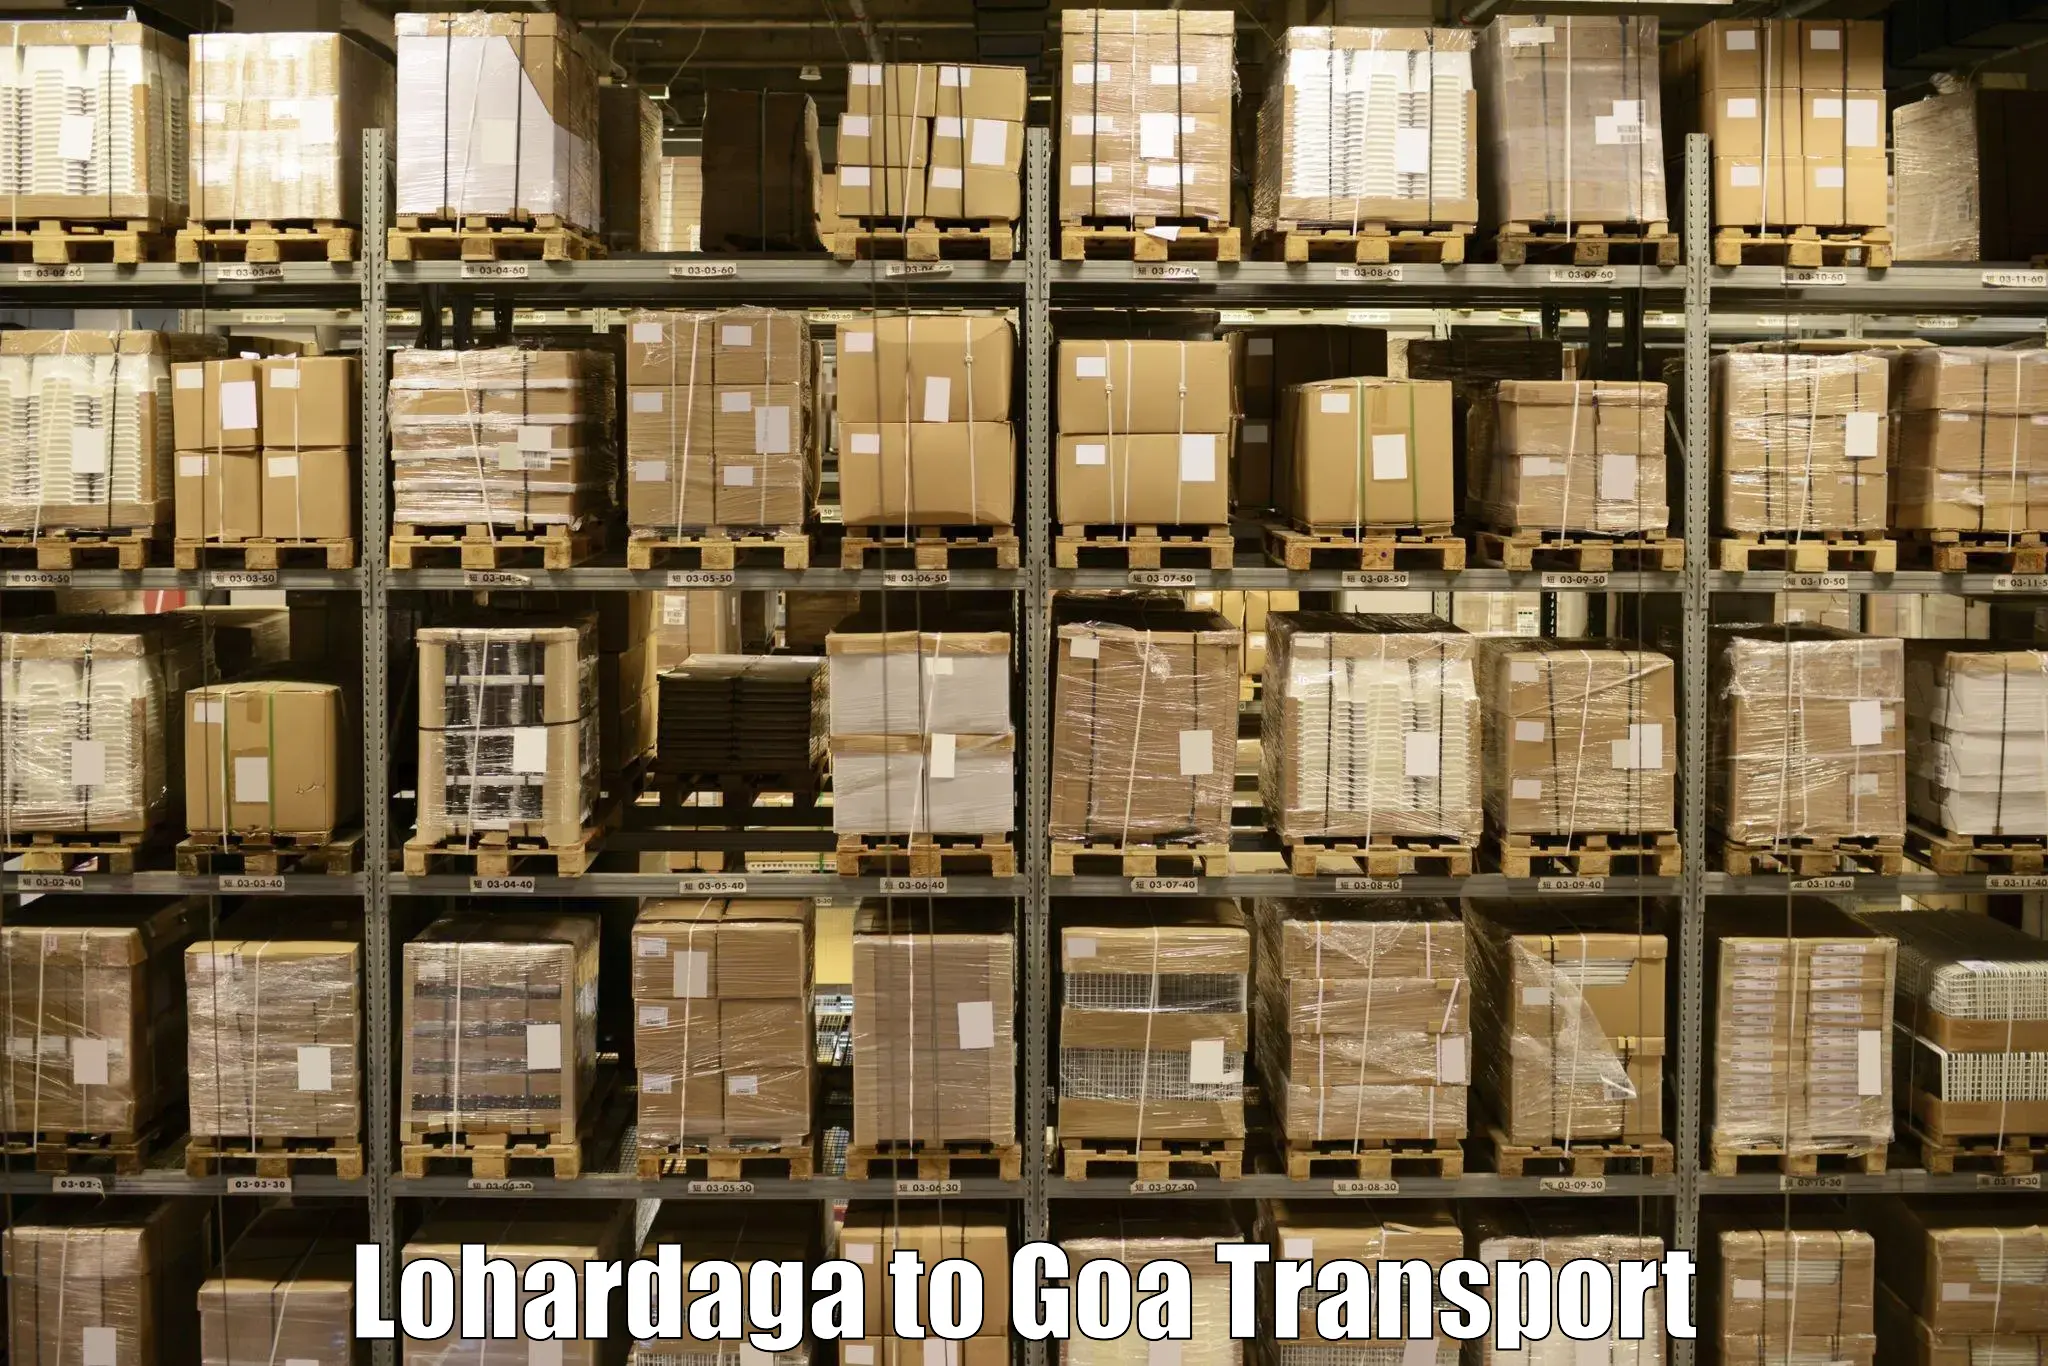 All India transport service Lohardaga to Bardez